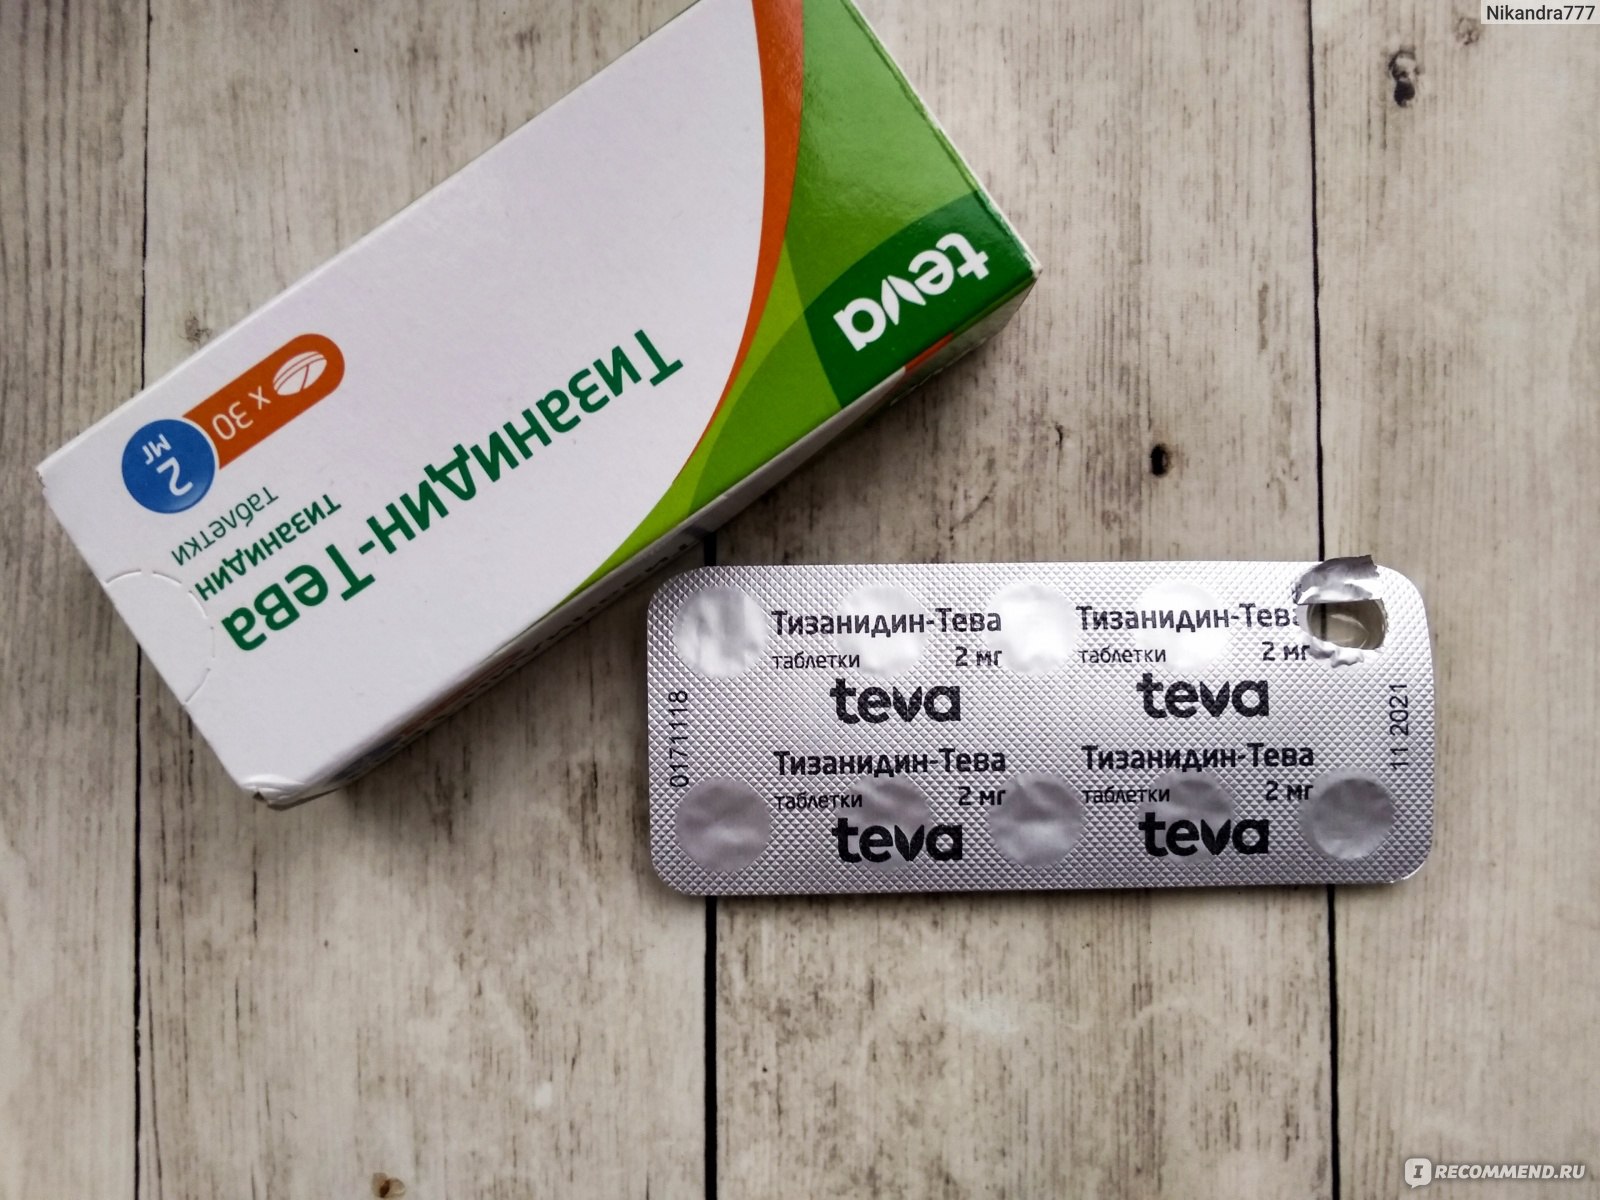 Лекарственный препарат TeVa Тизанидин Тева - «Опасный препарат .